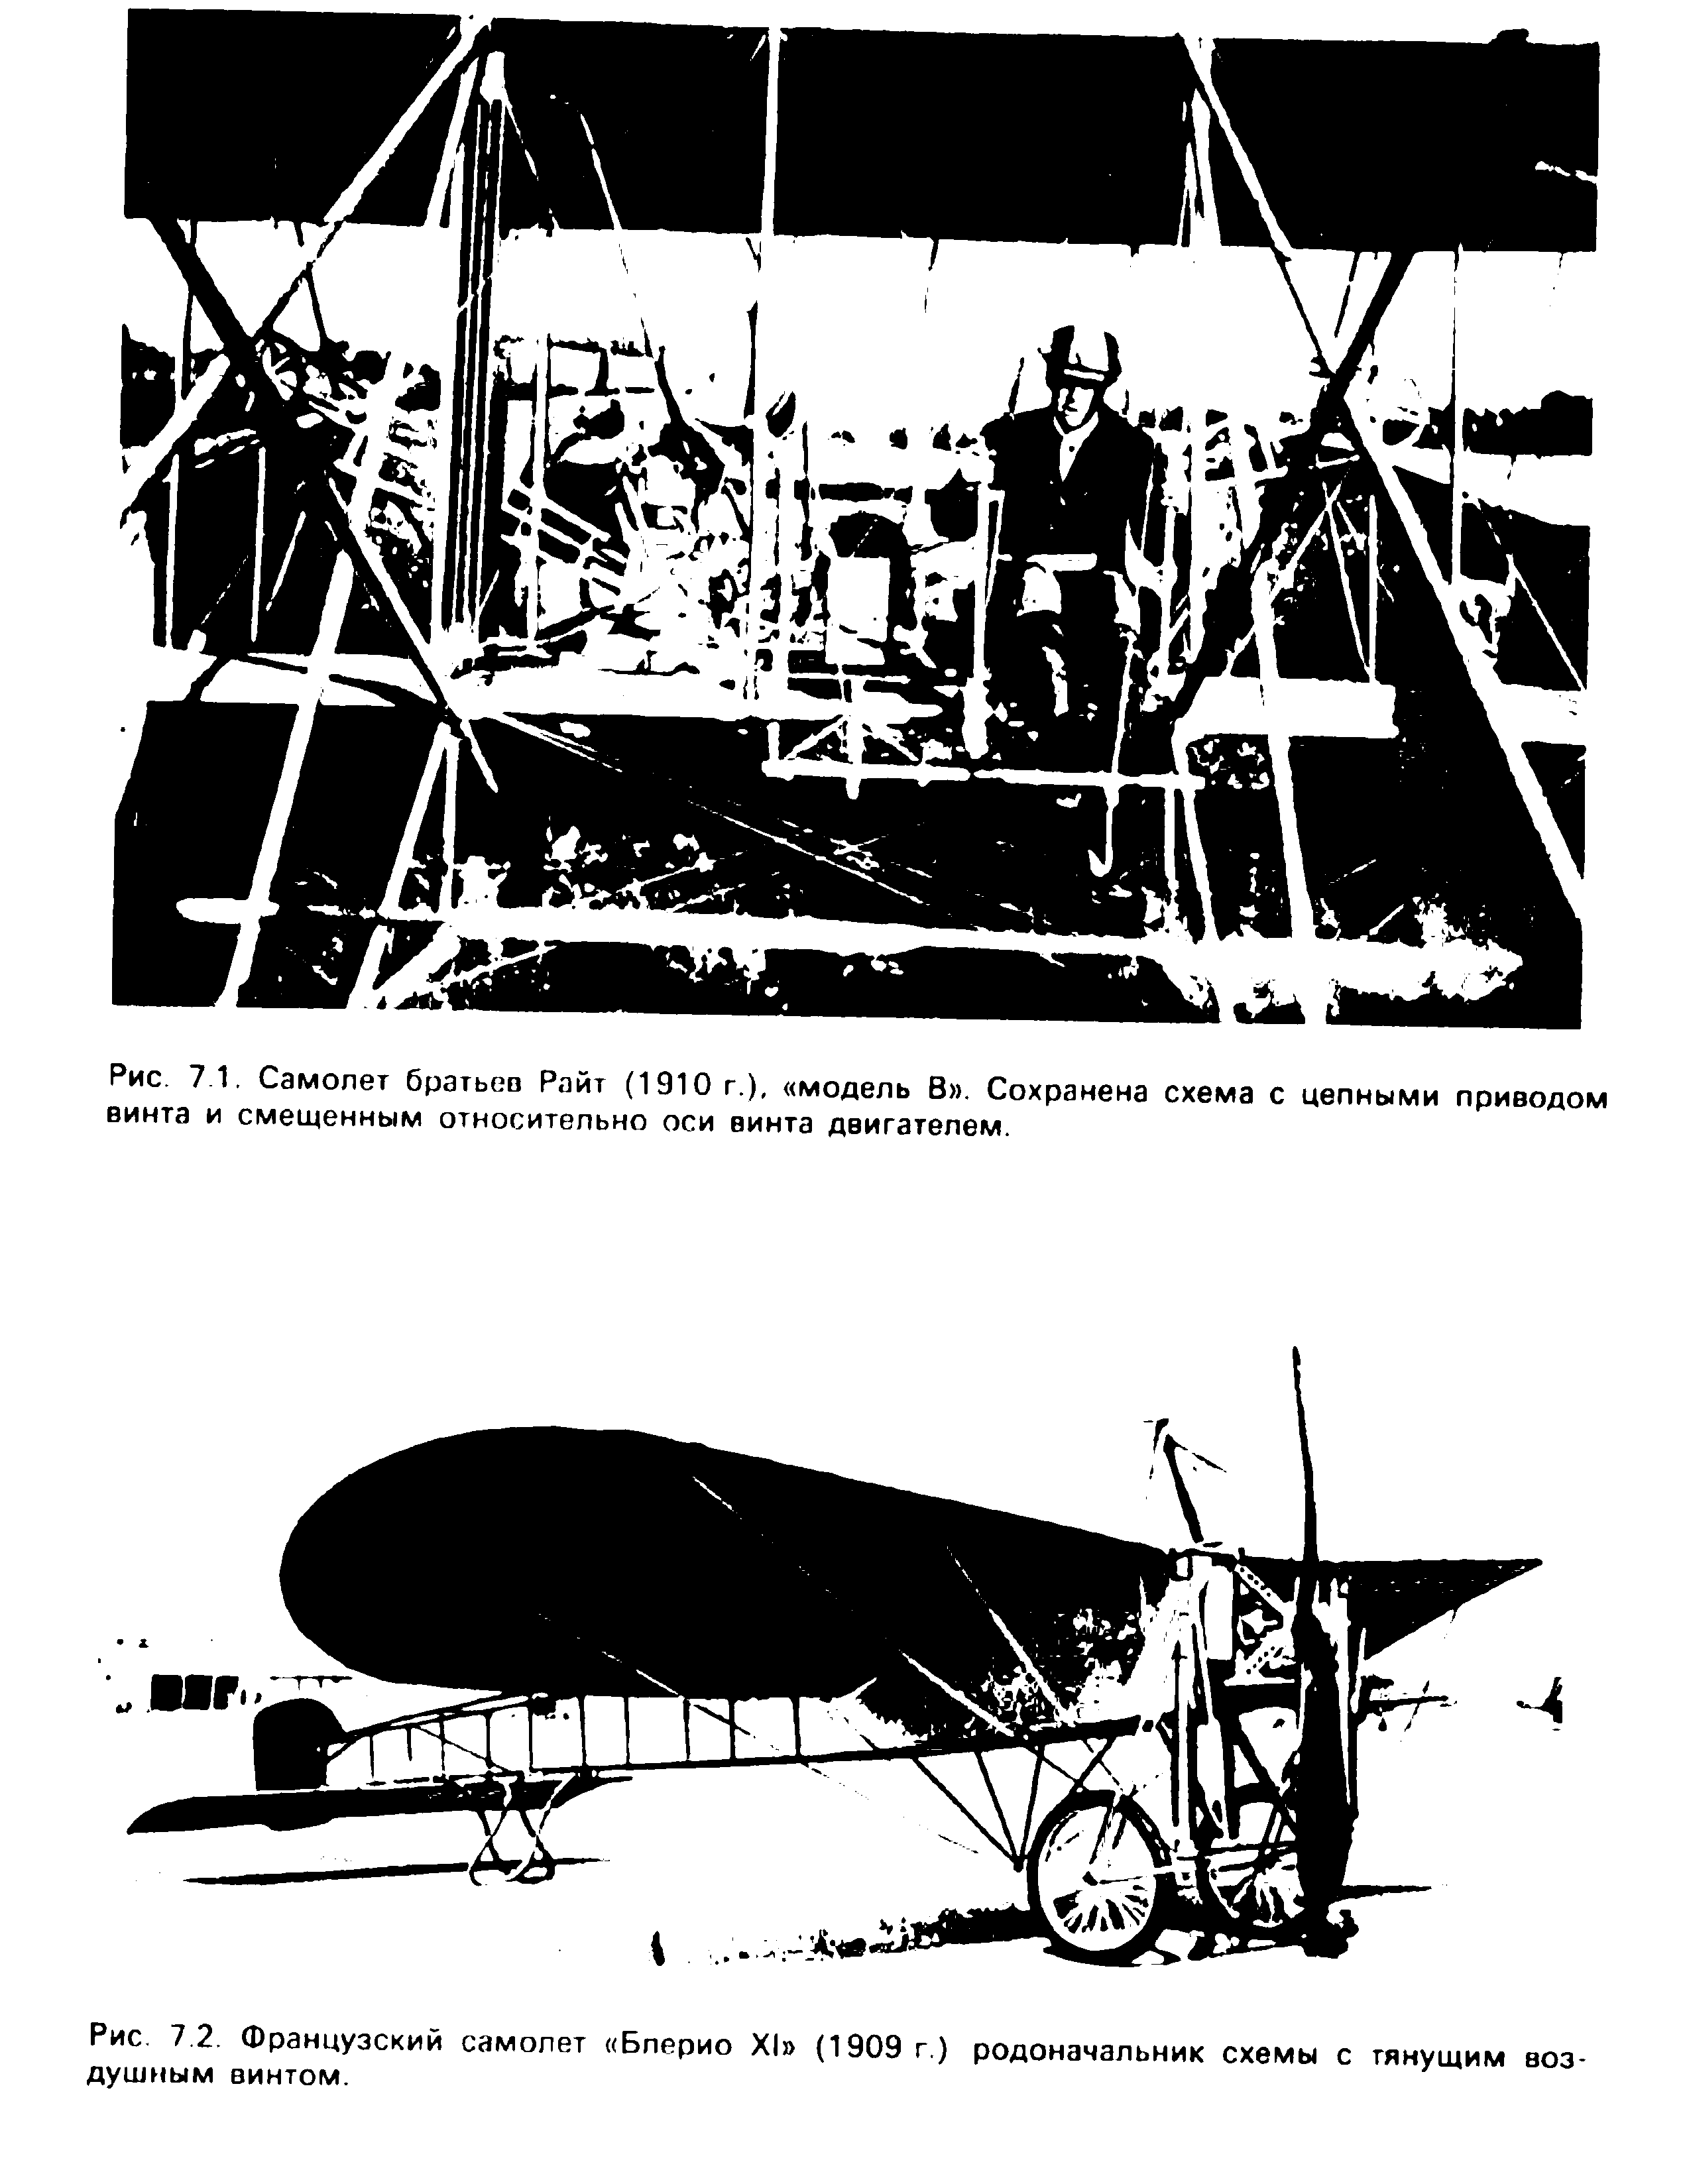 Рис. 7 1. Самолет братьев Райт (1910 г.), модель В . Сохранена схема с <a href="/info/458145">цепными приводом</a> винта и <a href="/info/239839">смещенным относительно</a> оси винта двигателем.
